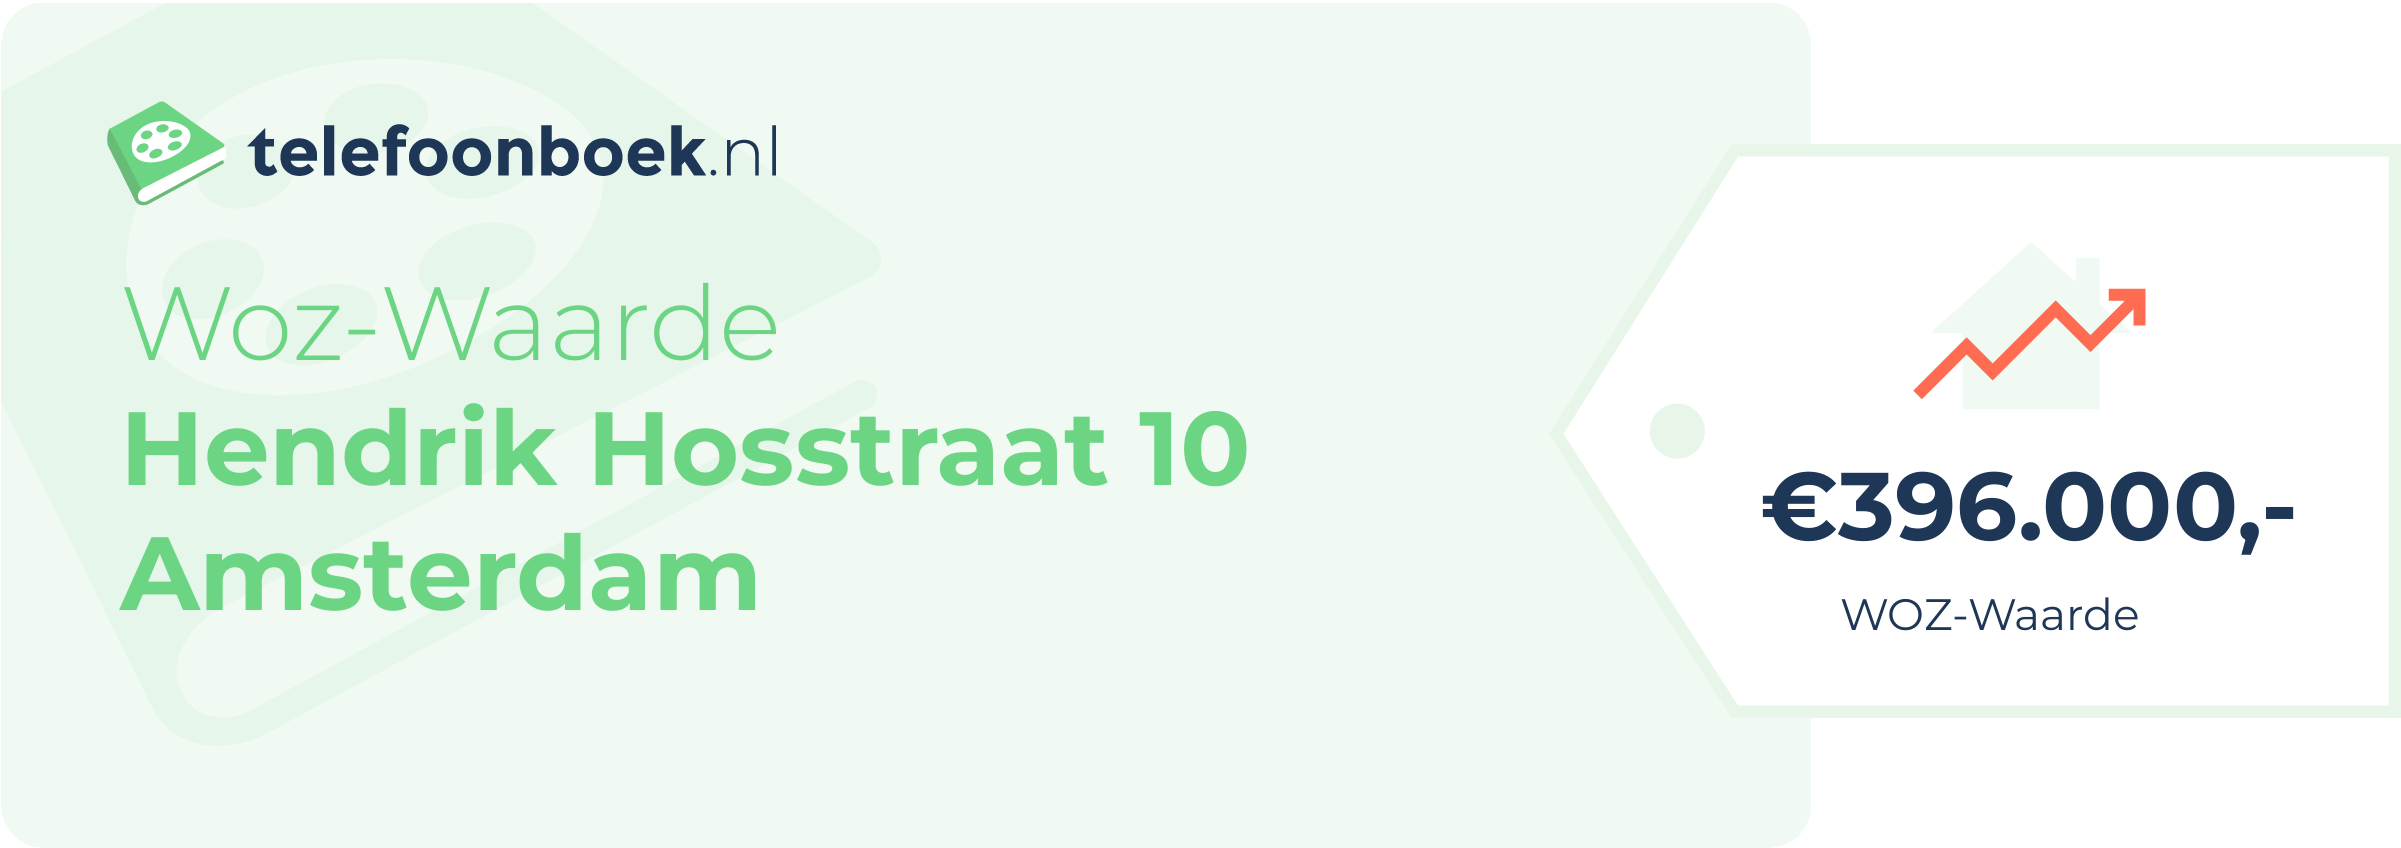 WOZ-waarde Hendrik Hosstraat 10 Amsterdam